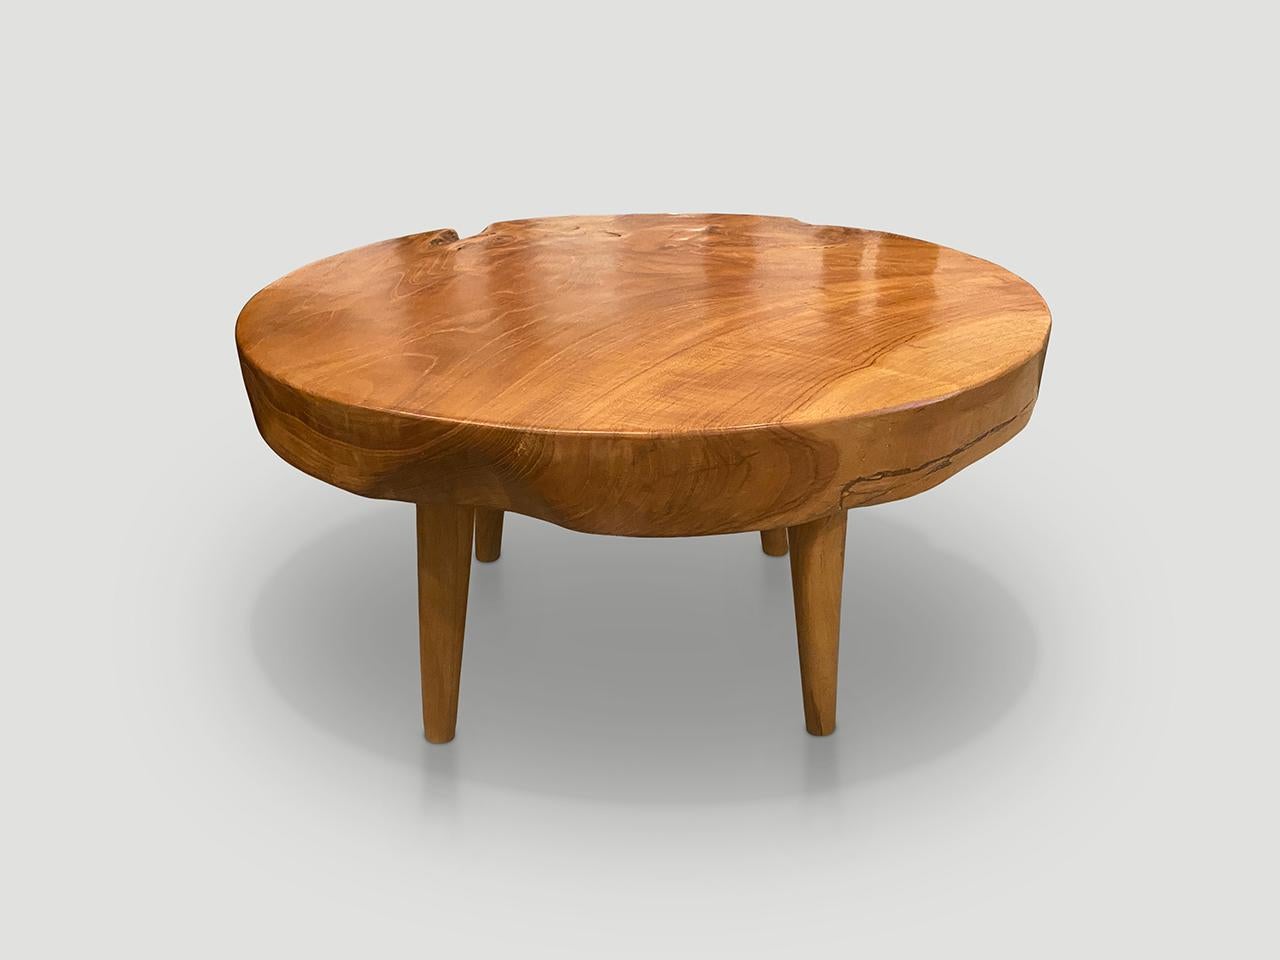 Impressionnante table basse en teck recyclé de 3 pouces à dalle unique. Il repose sur des pieds coniques de style mi-siècle et est fini avec une huile naturelle qui révèle le magnifique grain du bois. Biologique avec une touche d'originalité. Nous